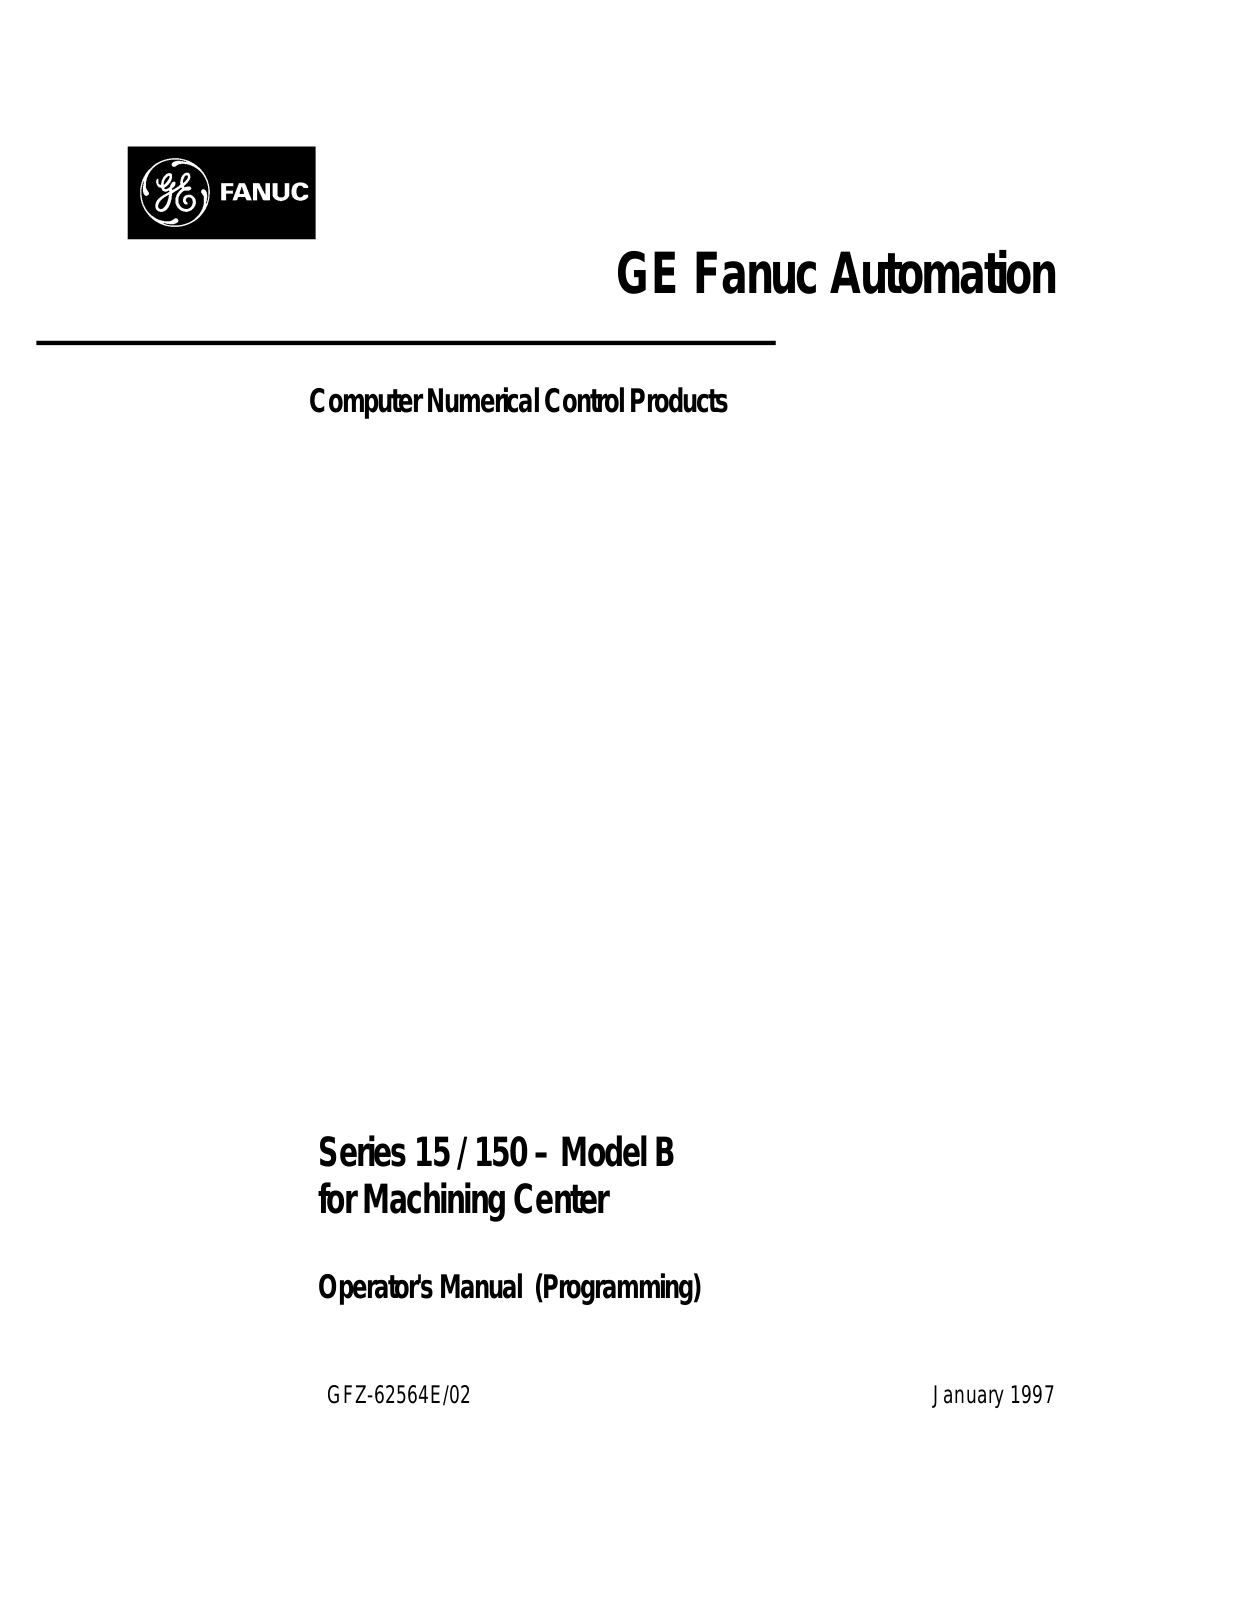 fanuc GFZ-62564E-02 OPERATOR'S MANUAL